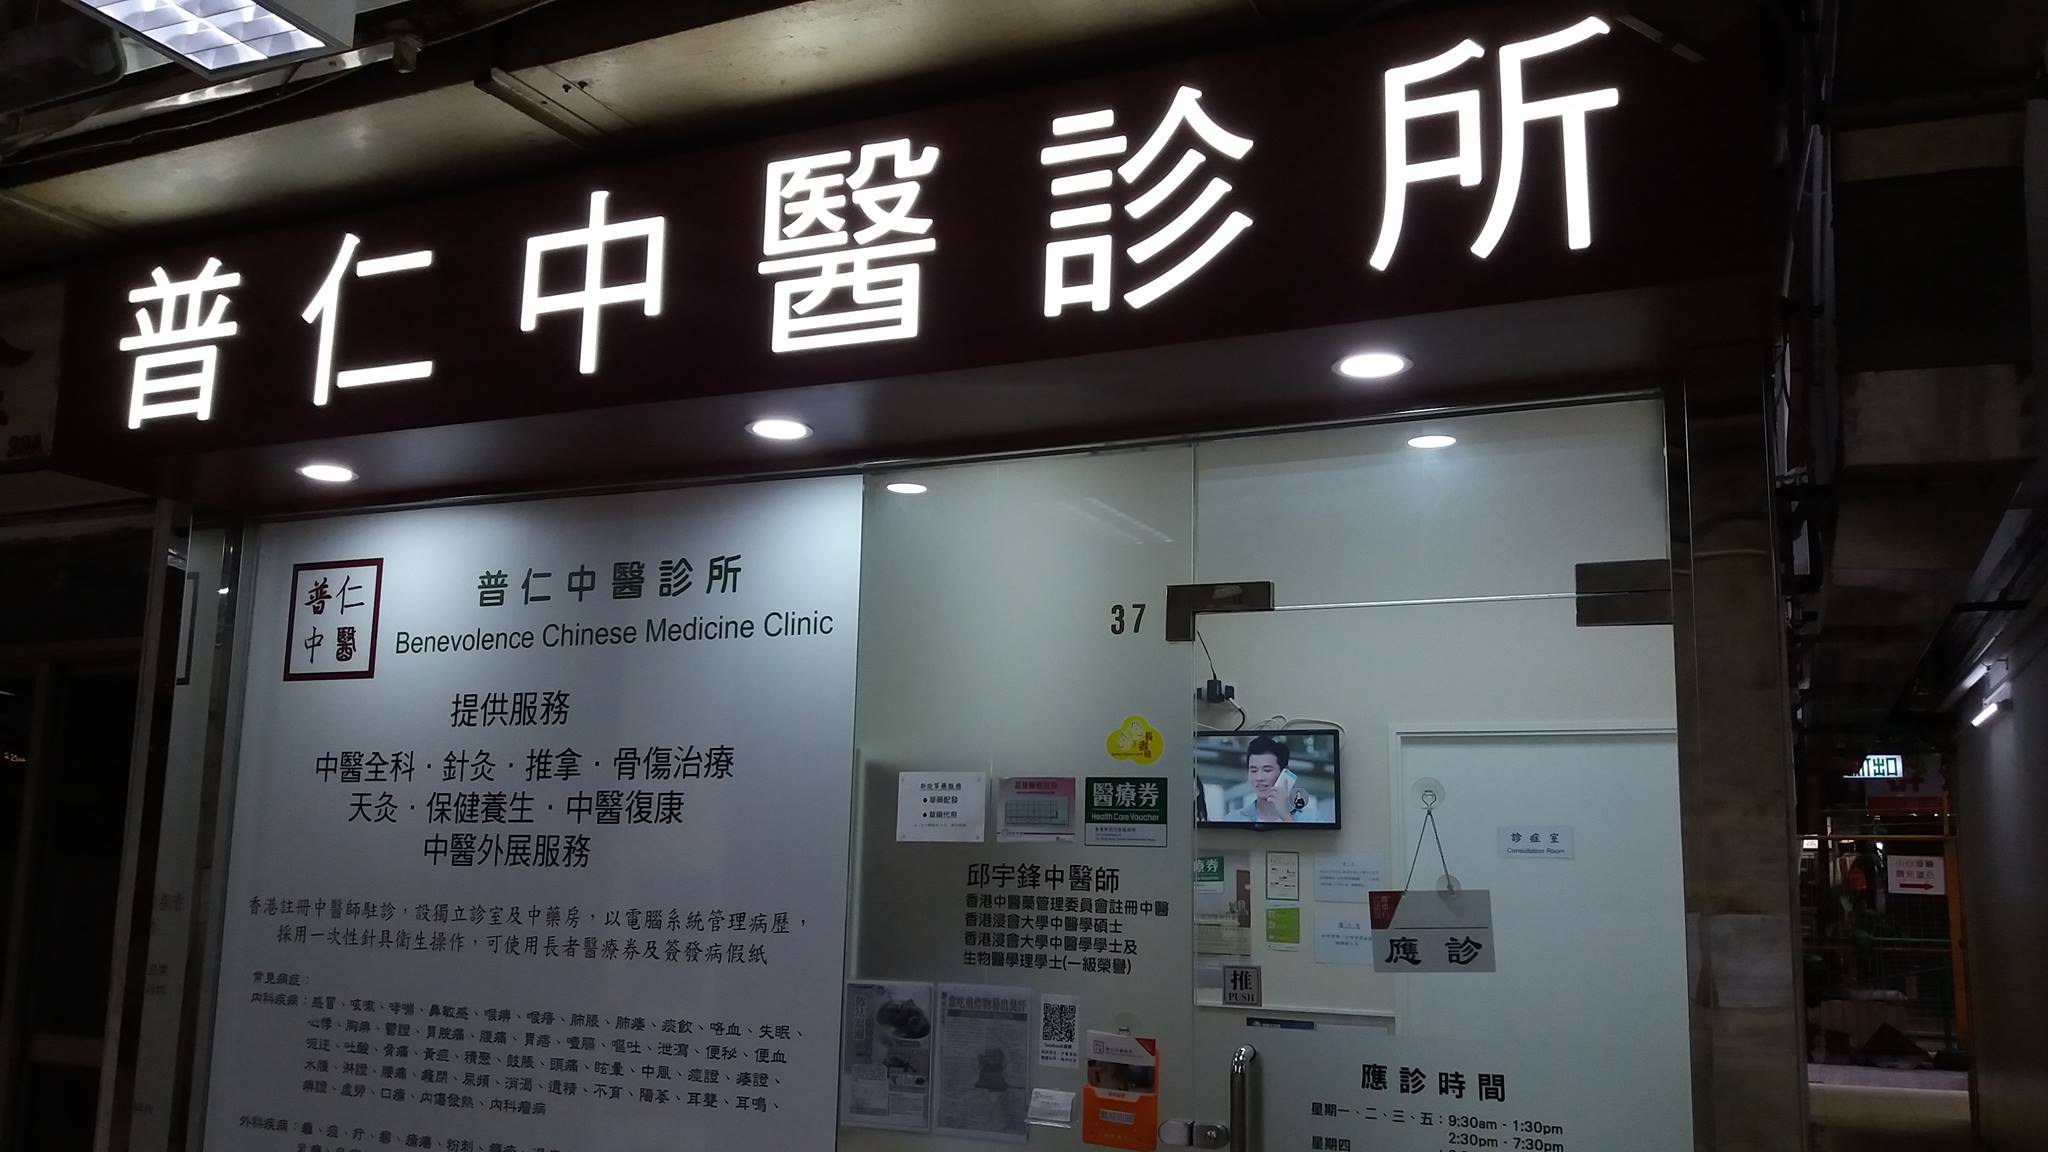 中医诊所: 普仁中醫診所